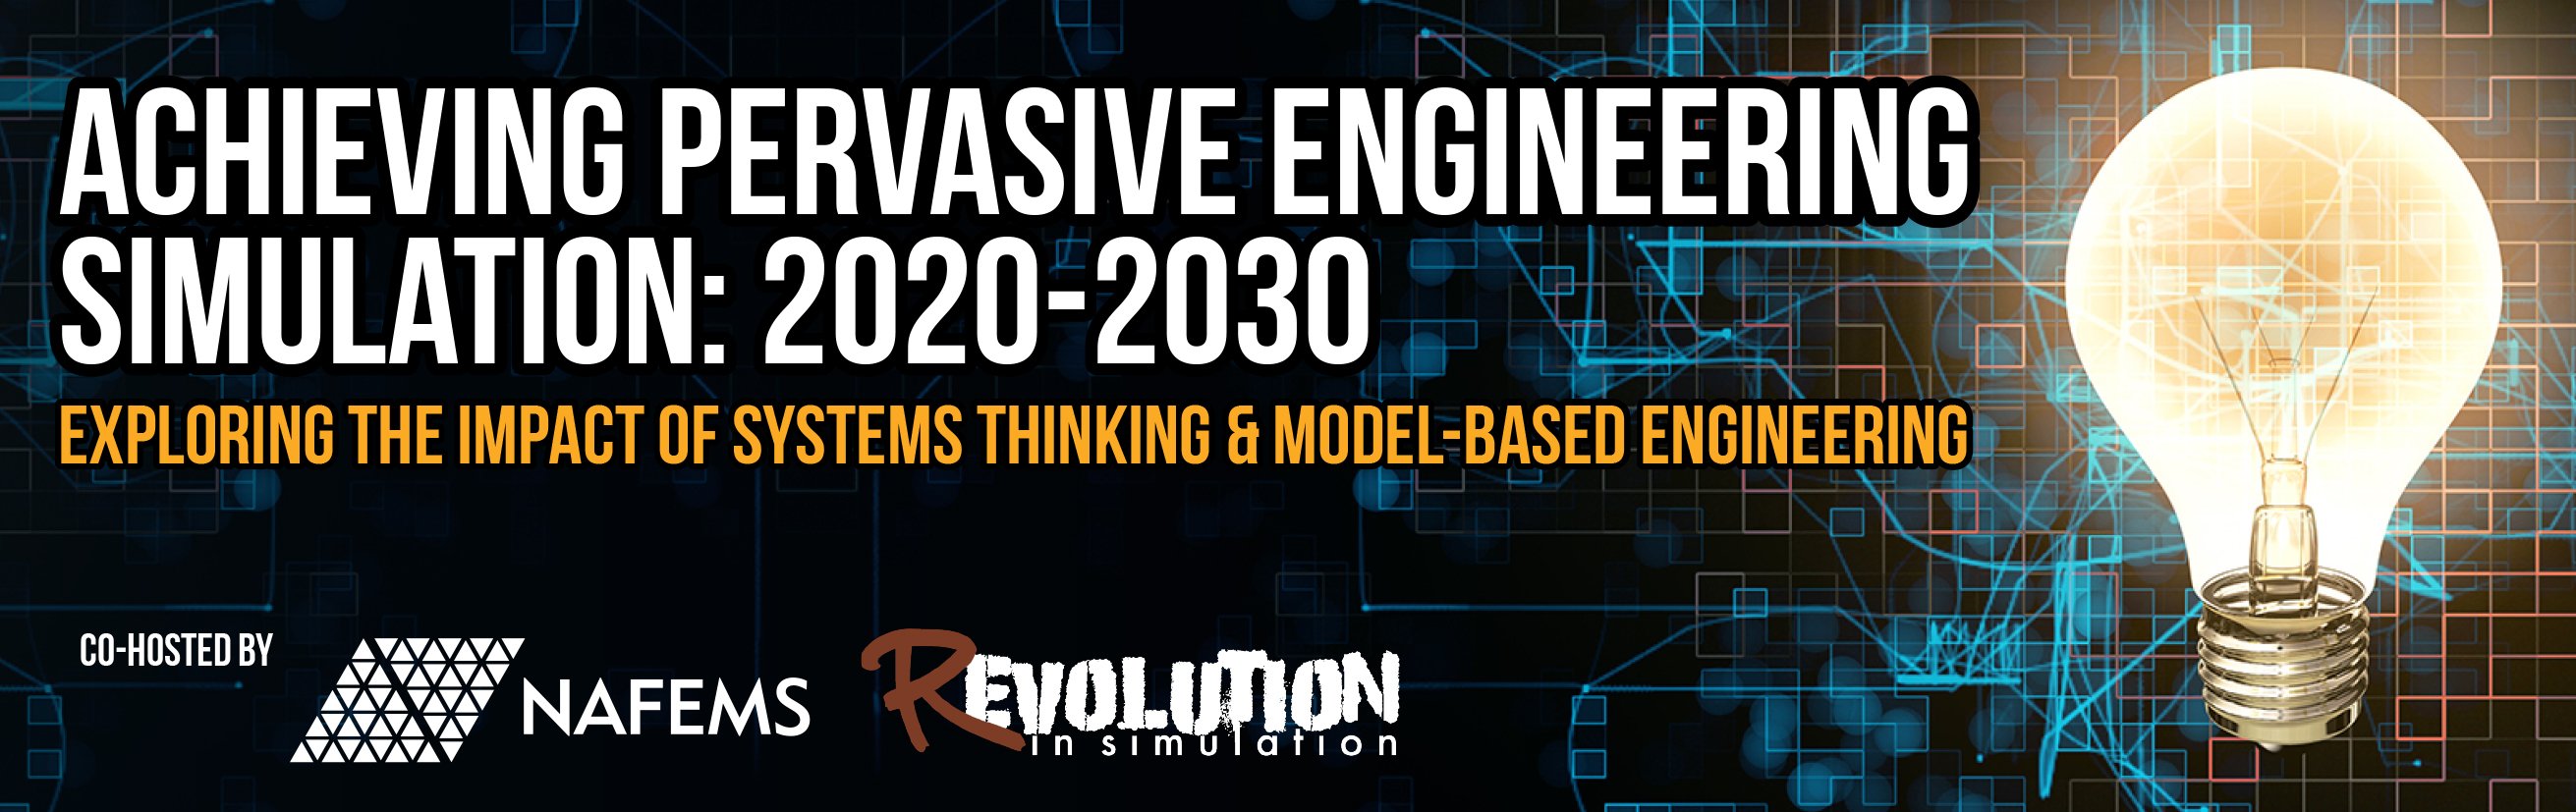 Achieving Pervasive Engineering Simulation: 2020-2030